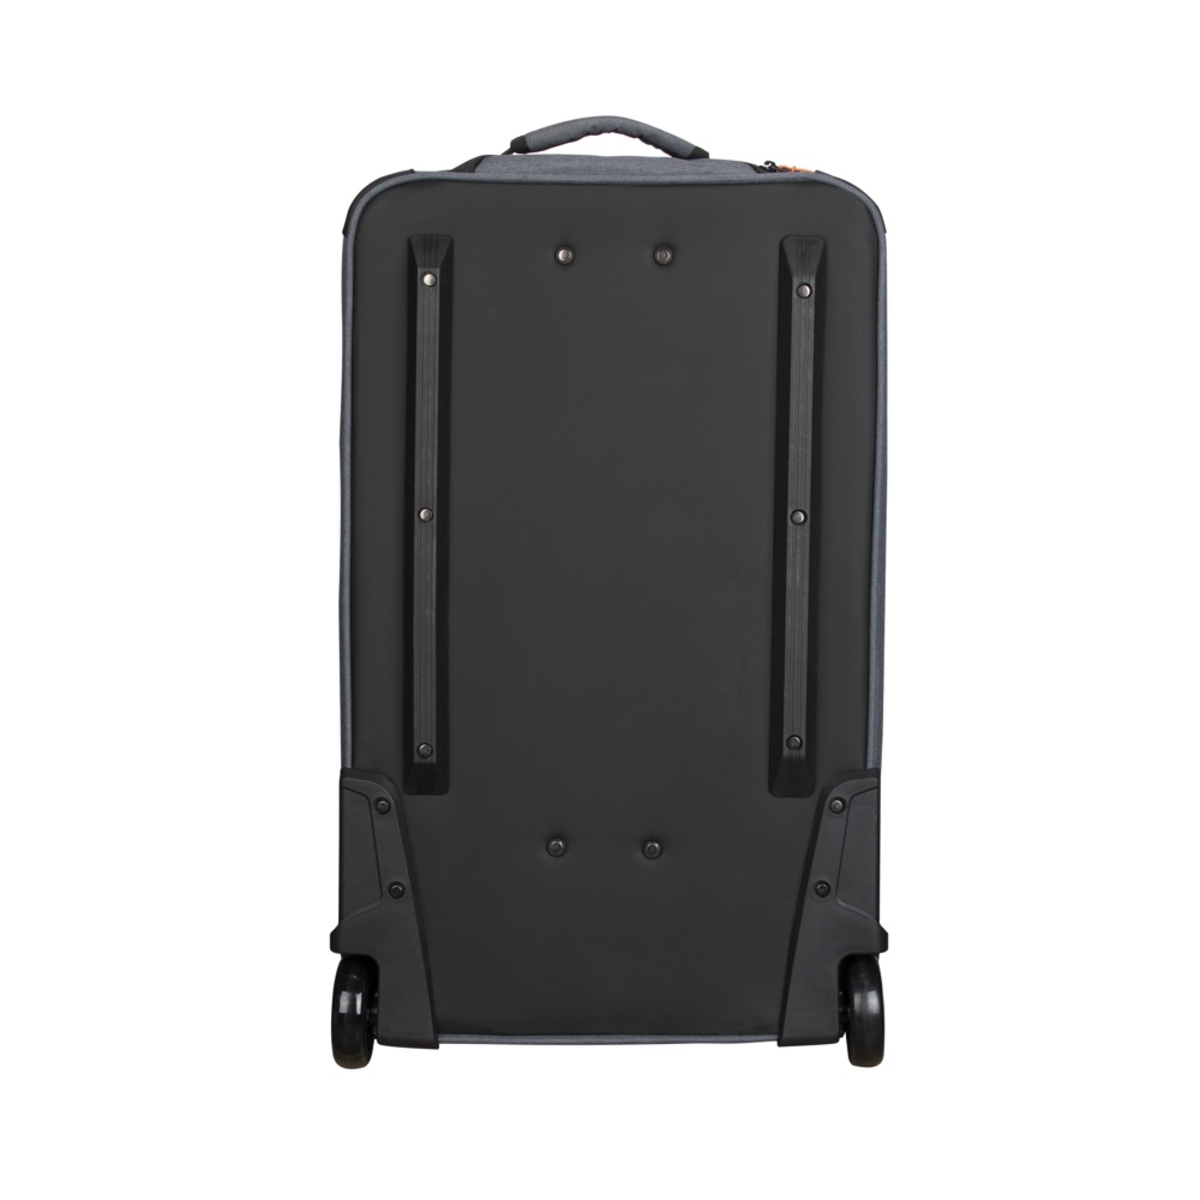 Godox Carry Bag for M600Bi CB65